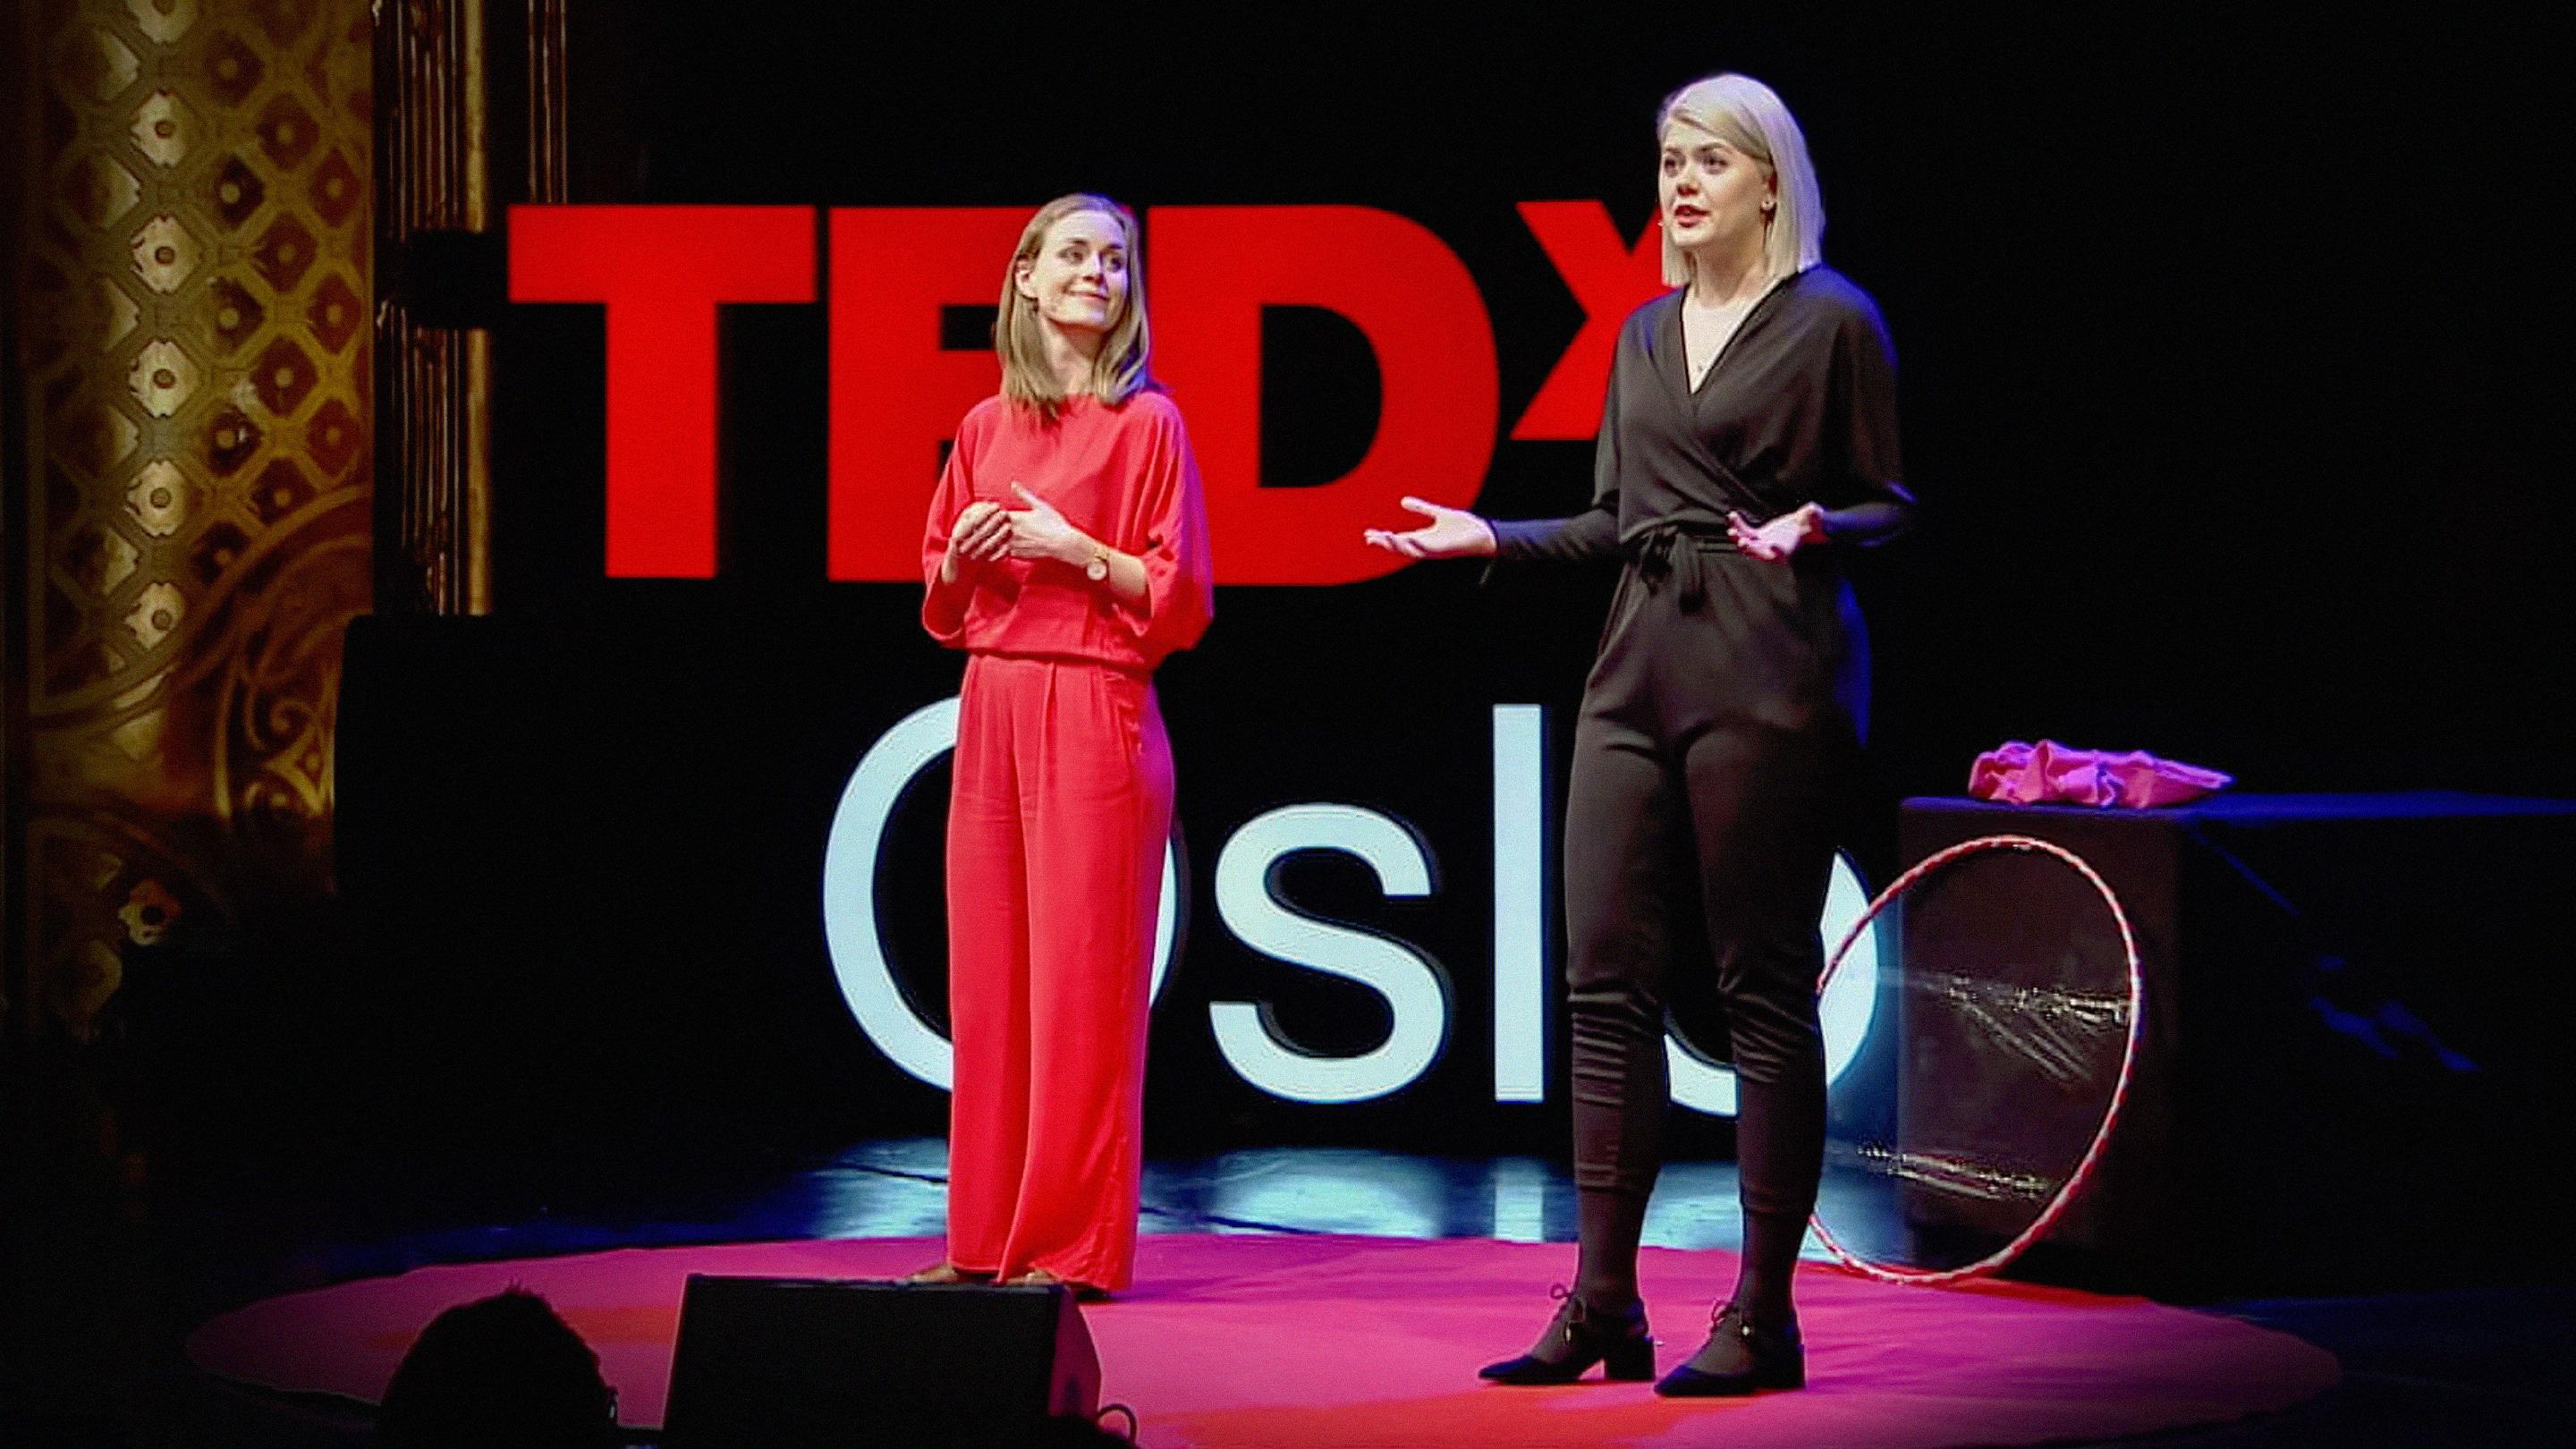 ニナ・ドルヴィク・ブロックマン、エレン・シュトッケン・ダール: 処女性にまつわる嘘 | TED Talk